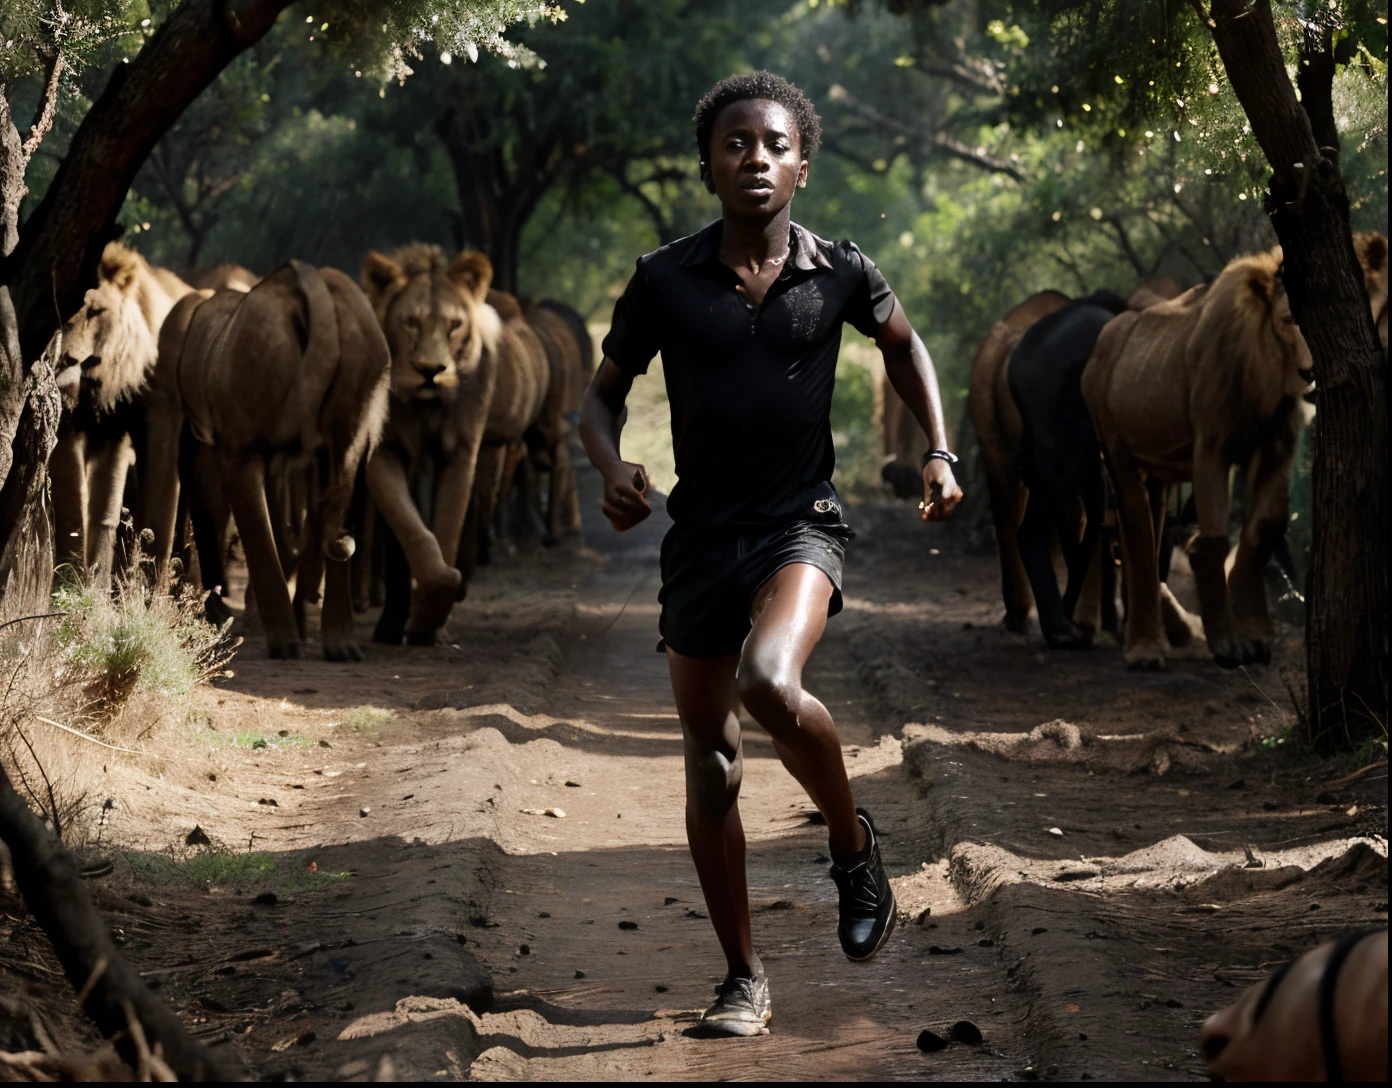 แอฟริกันผิวดำวิ่งอยู่กลางป่าล้อมรอบด้วยสิงโตอยู่ด้านหลัง, ด้วยสภาพแวดล้อมที่น่าสะพรึงกลัว เช่น แสงสว่างที่มืดและฝน